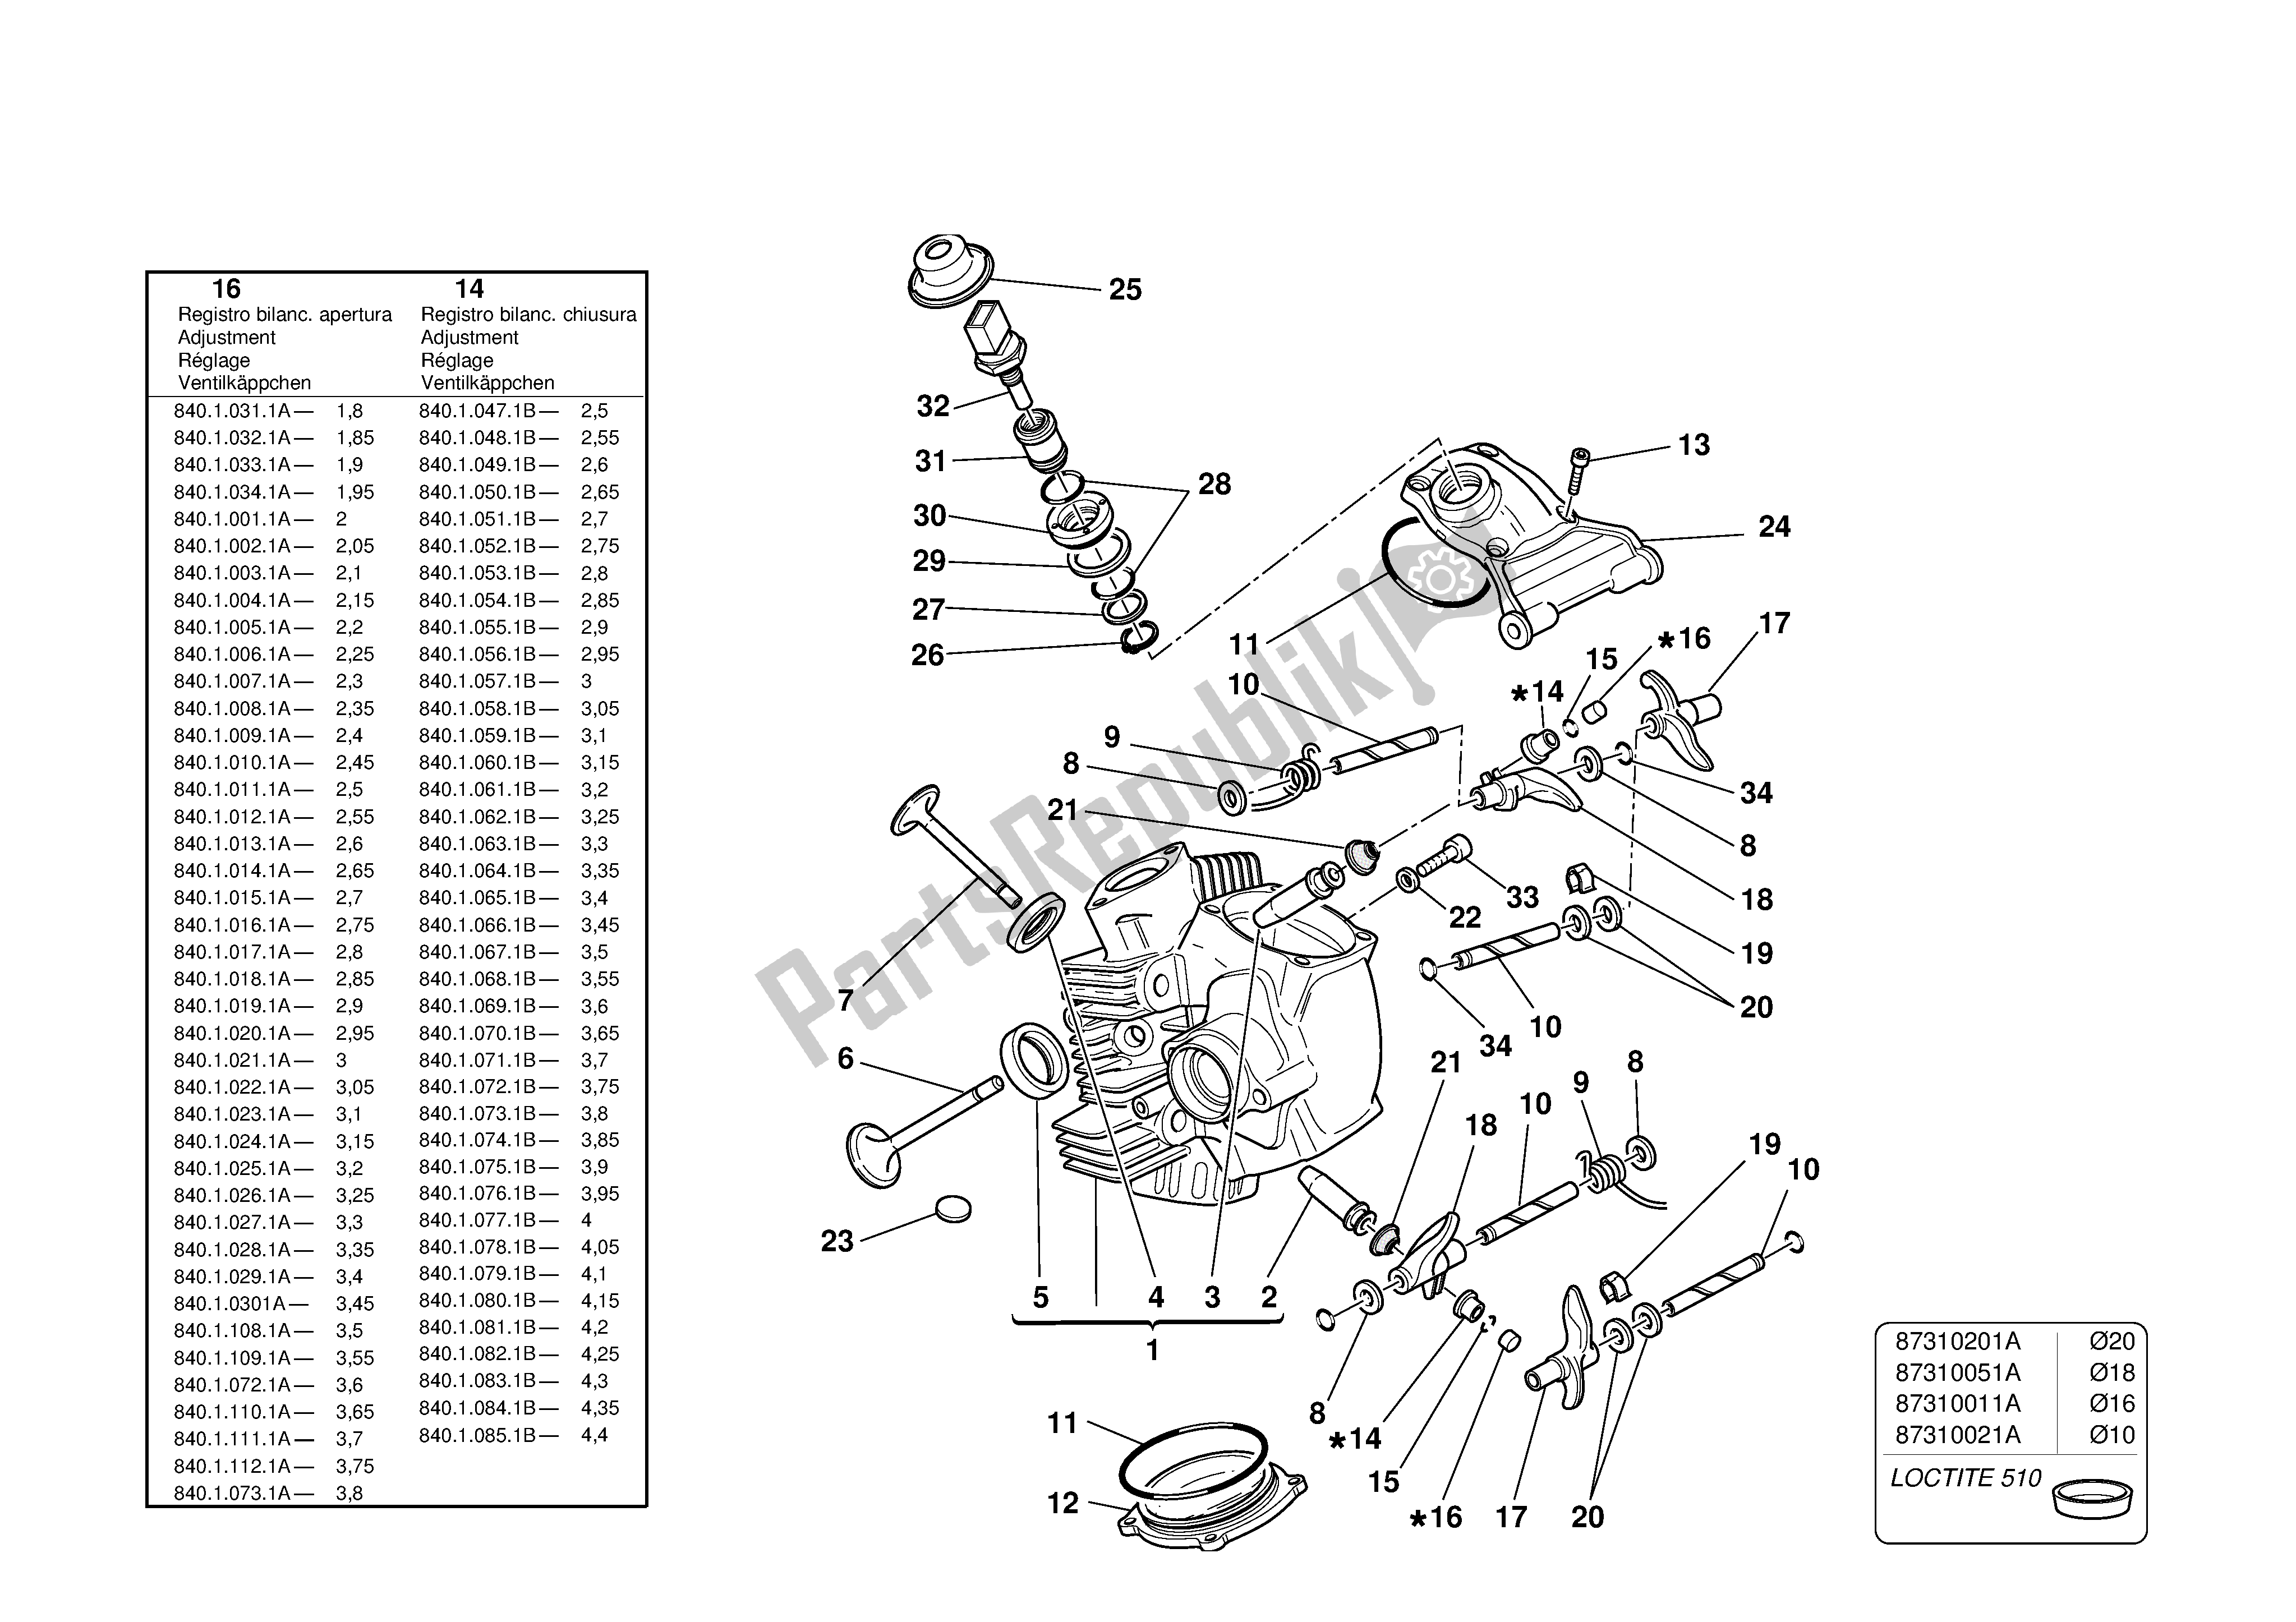 Alle onderdelen voor de Horizontale Kop van de Ducati Monster S 1000 2003